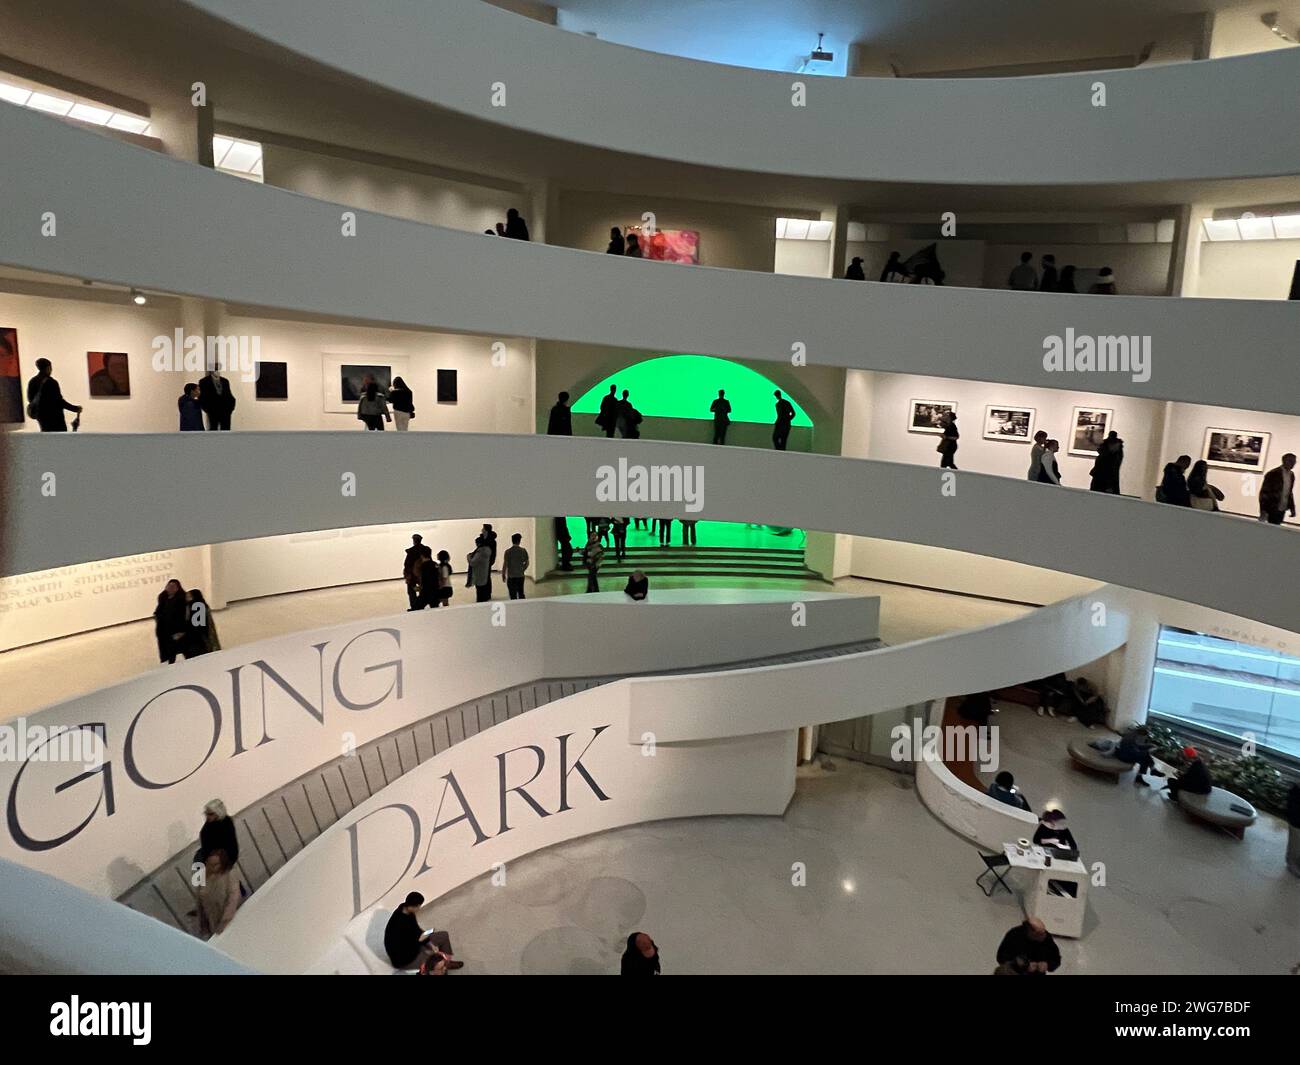 Going Dark: The Contemporary Figure at the Edge of Visibility presenta opere d'arte che presentano figure parzialmente oscurate o nascoste, posizionandole così al "bordo della visibilità". Guggenheim Museum di New York. Foto Stock